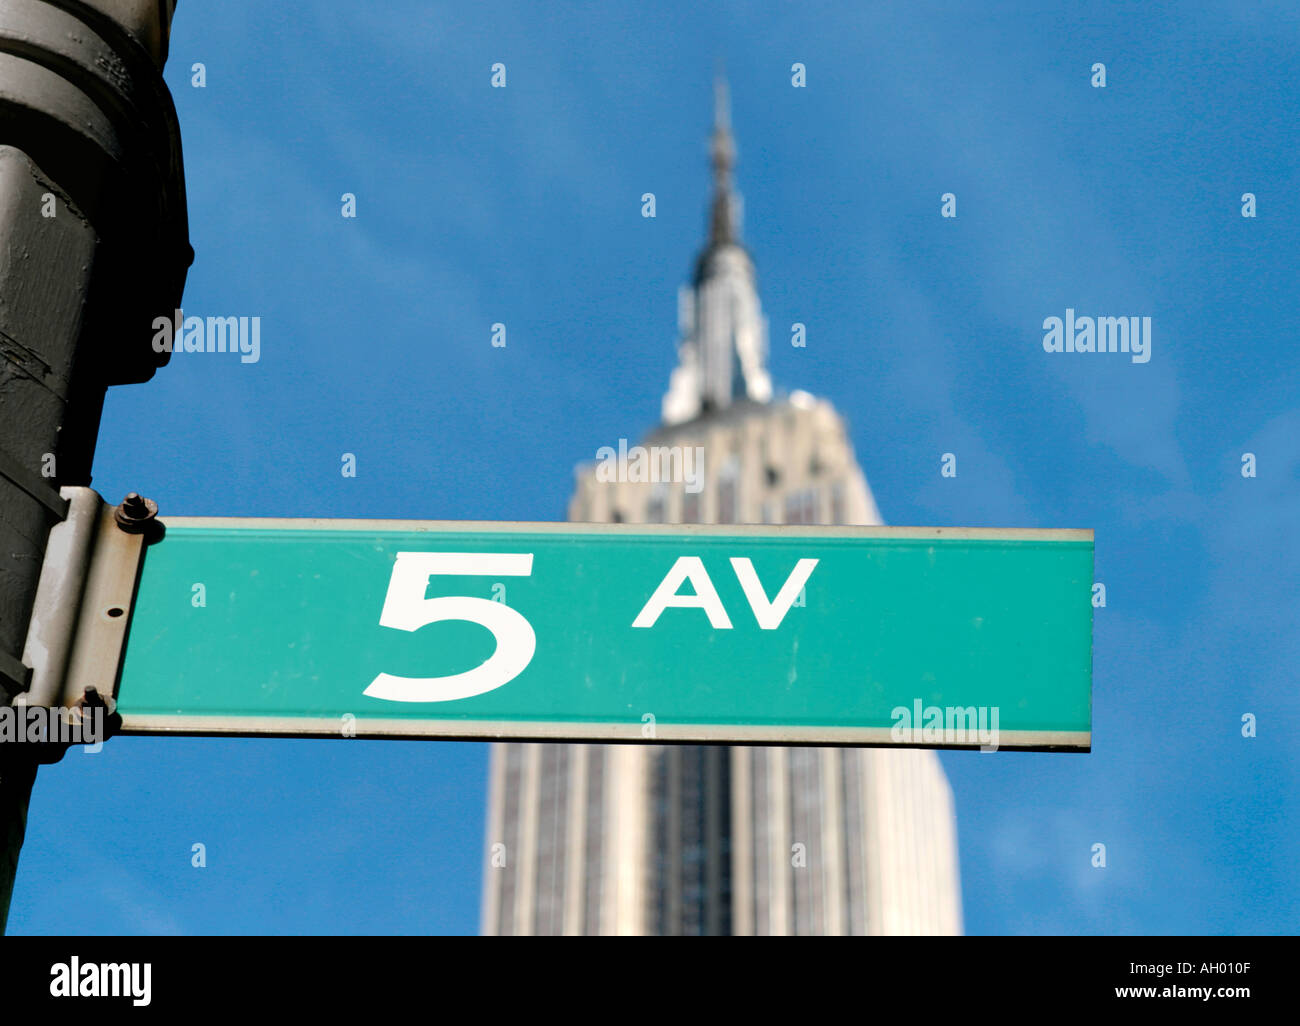 Fifth Avenue un cartello stradale con l'Empire State Building dietro, Manhattan NYC, New York City, NY, STATI UNITI D'AMERICA Foto Stock